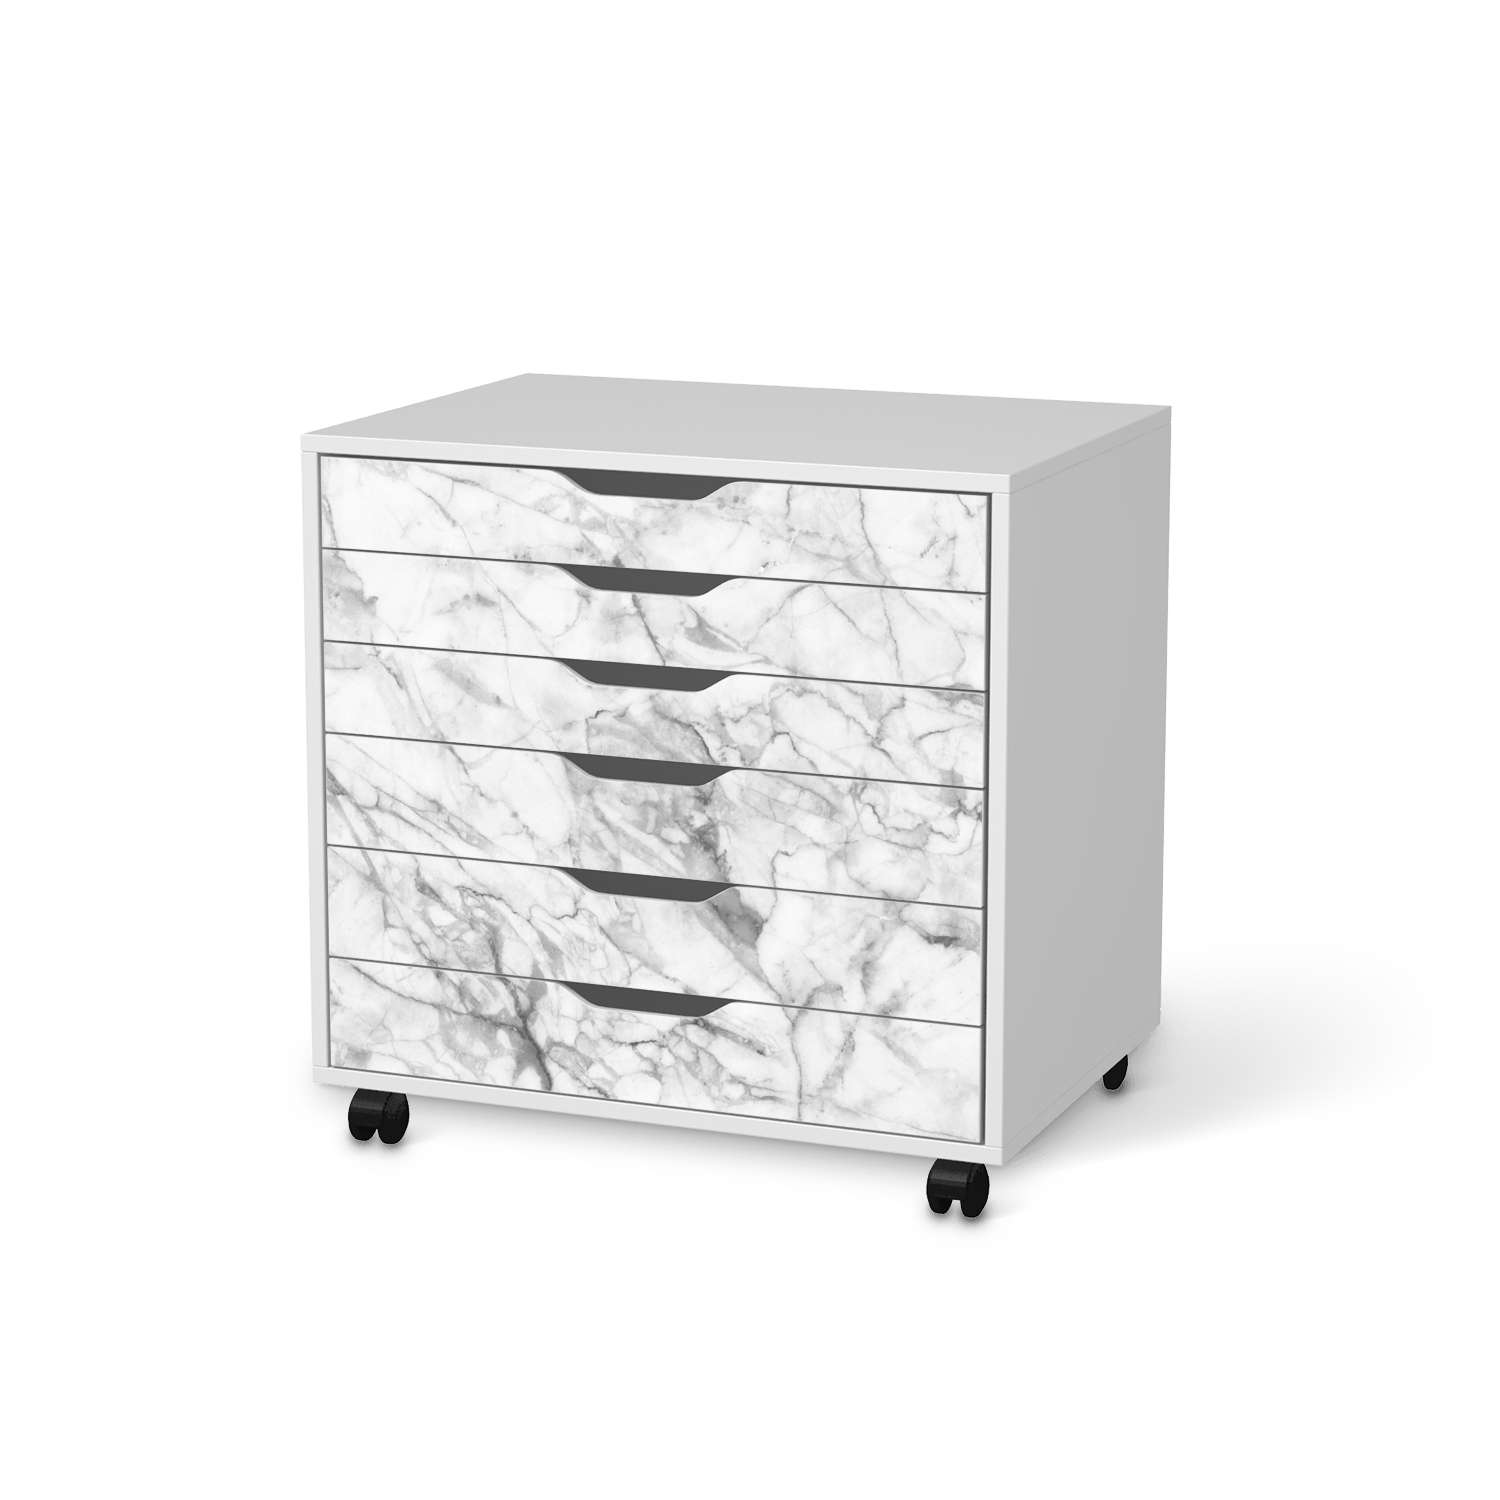 M?belfolie IKEA Alex Rollcontainer 6 Schubladen - Design: Marmor wei? von creatisto